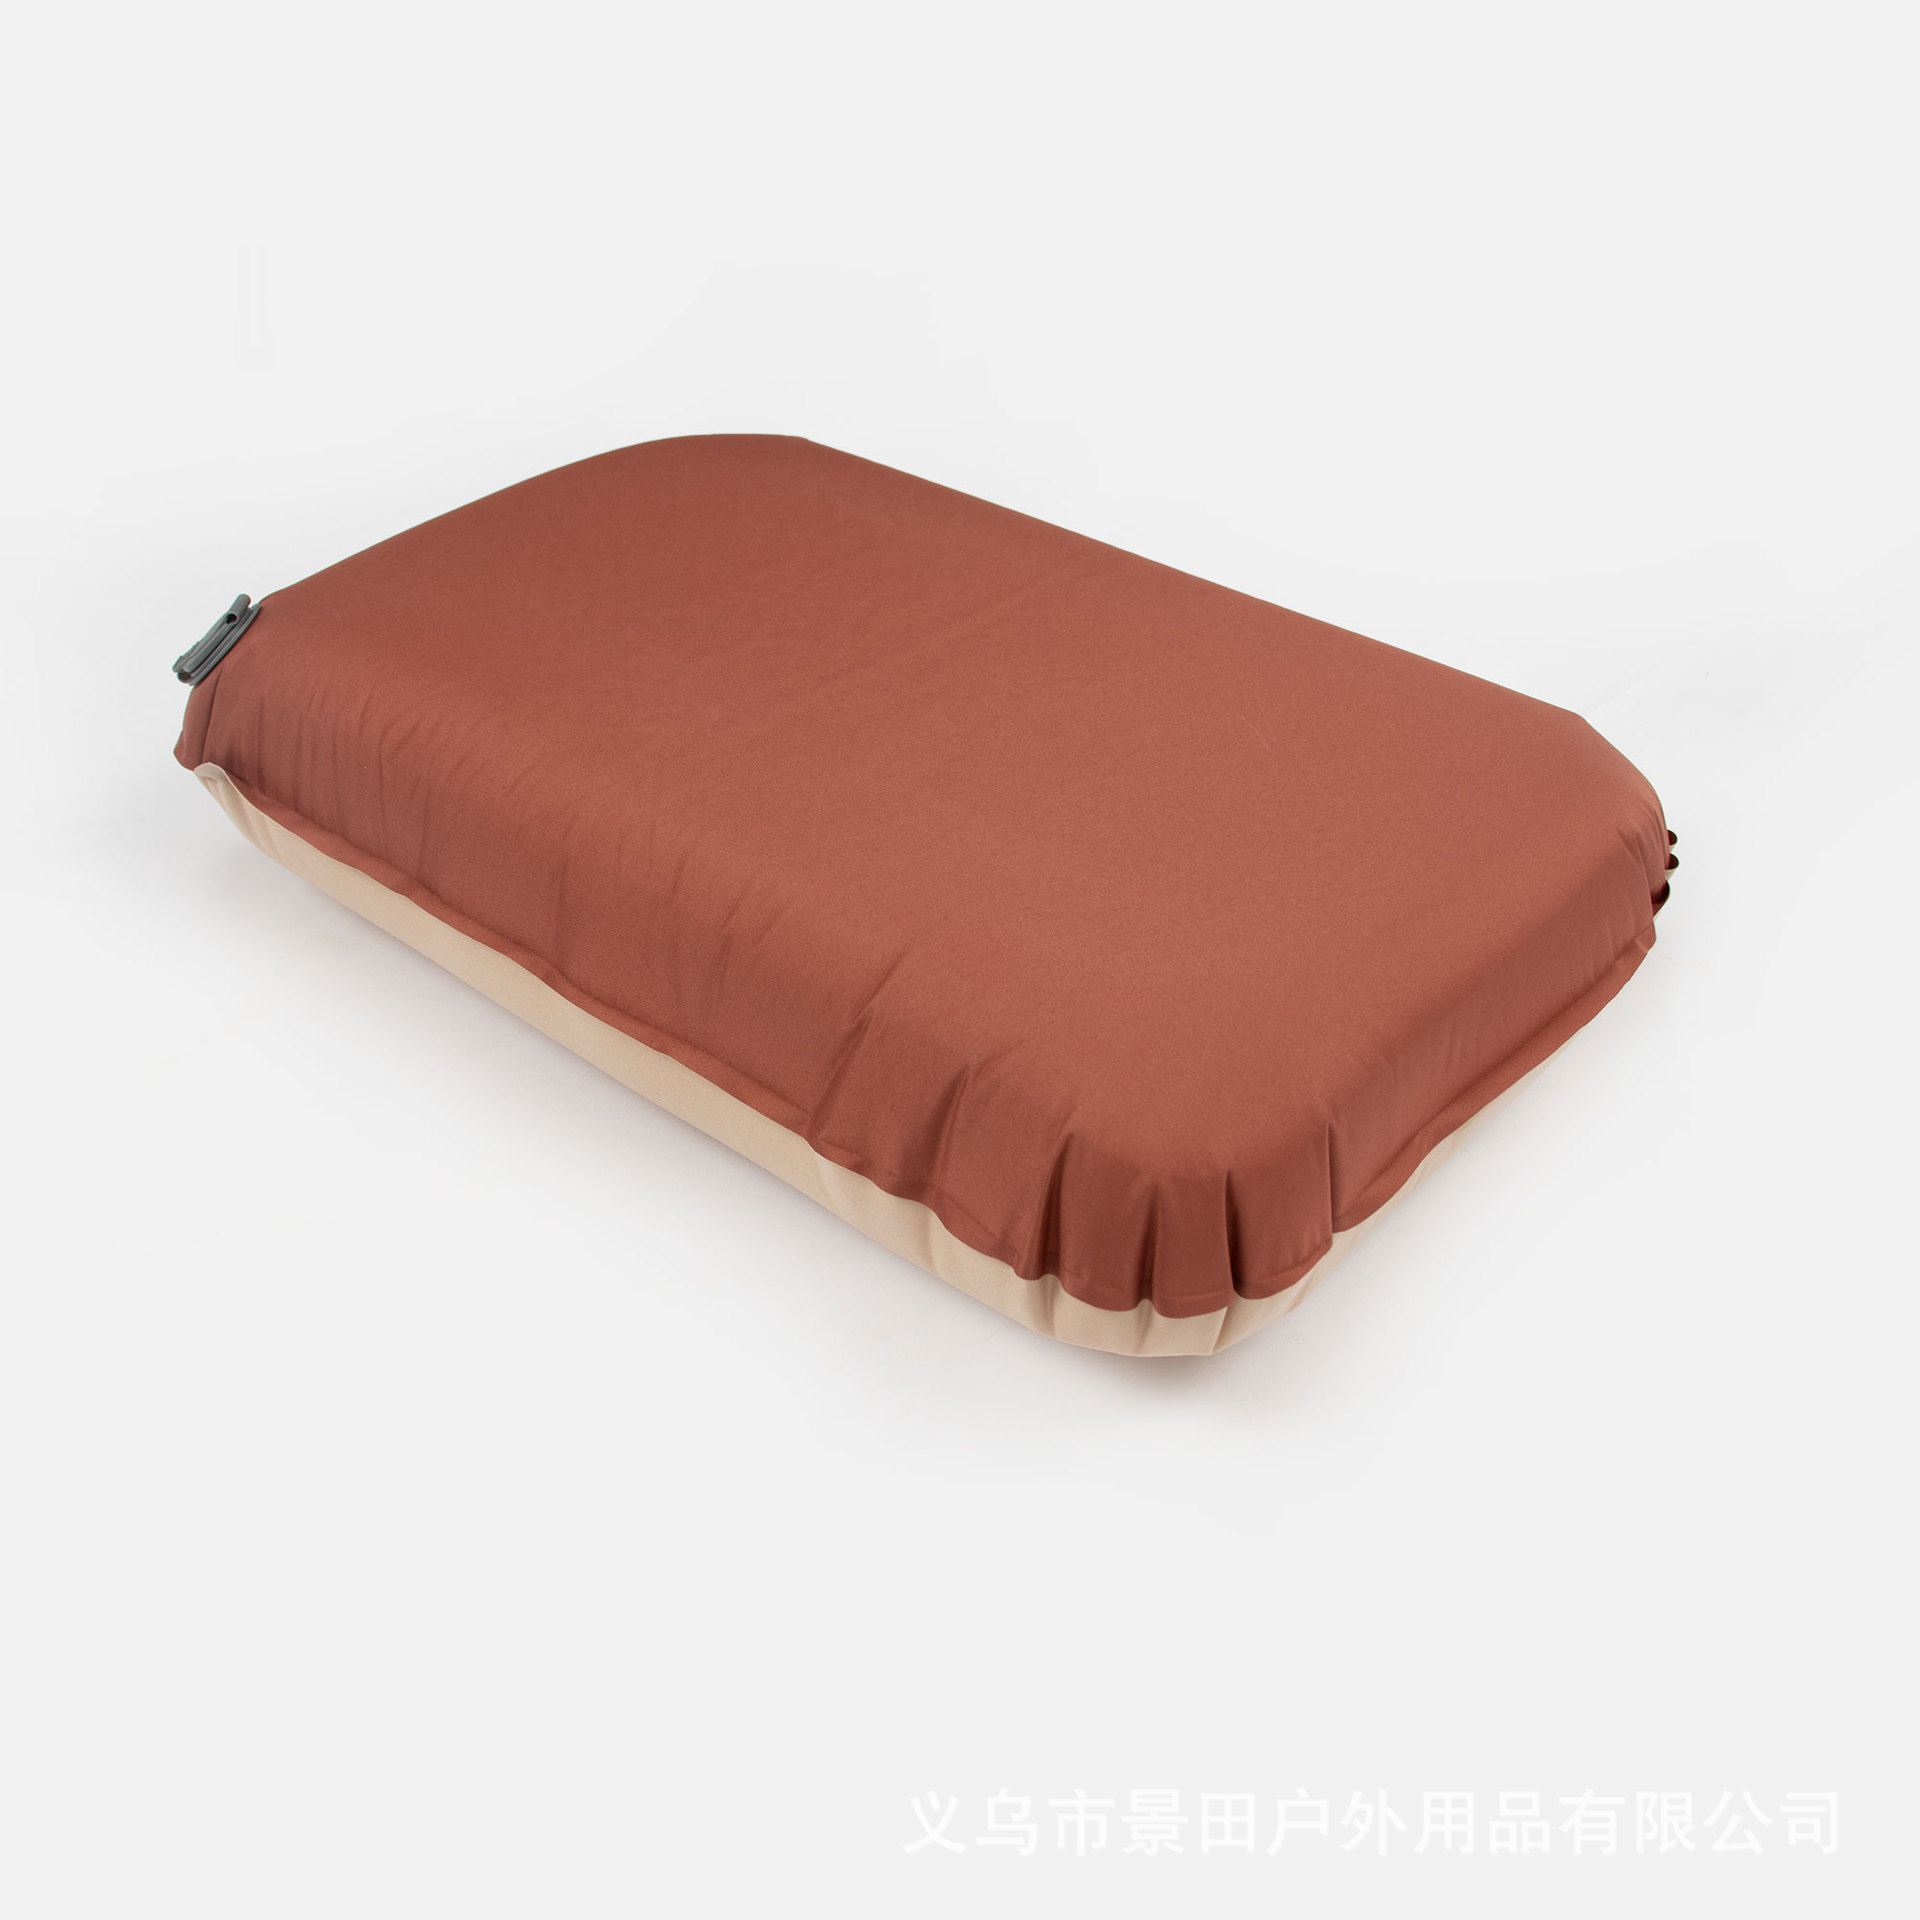 网红爆款自动充气垫枕头厂家直销旅行居家便携收纳柔软舒适枕头详情图4